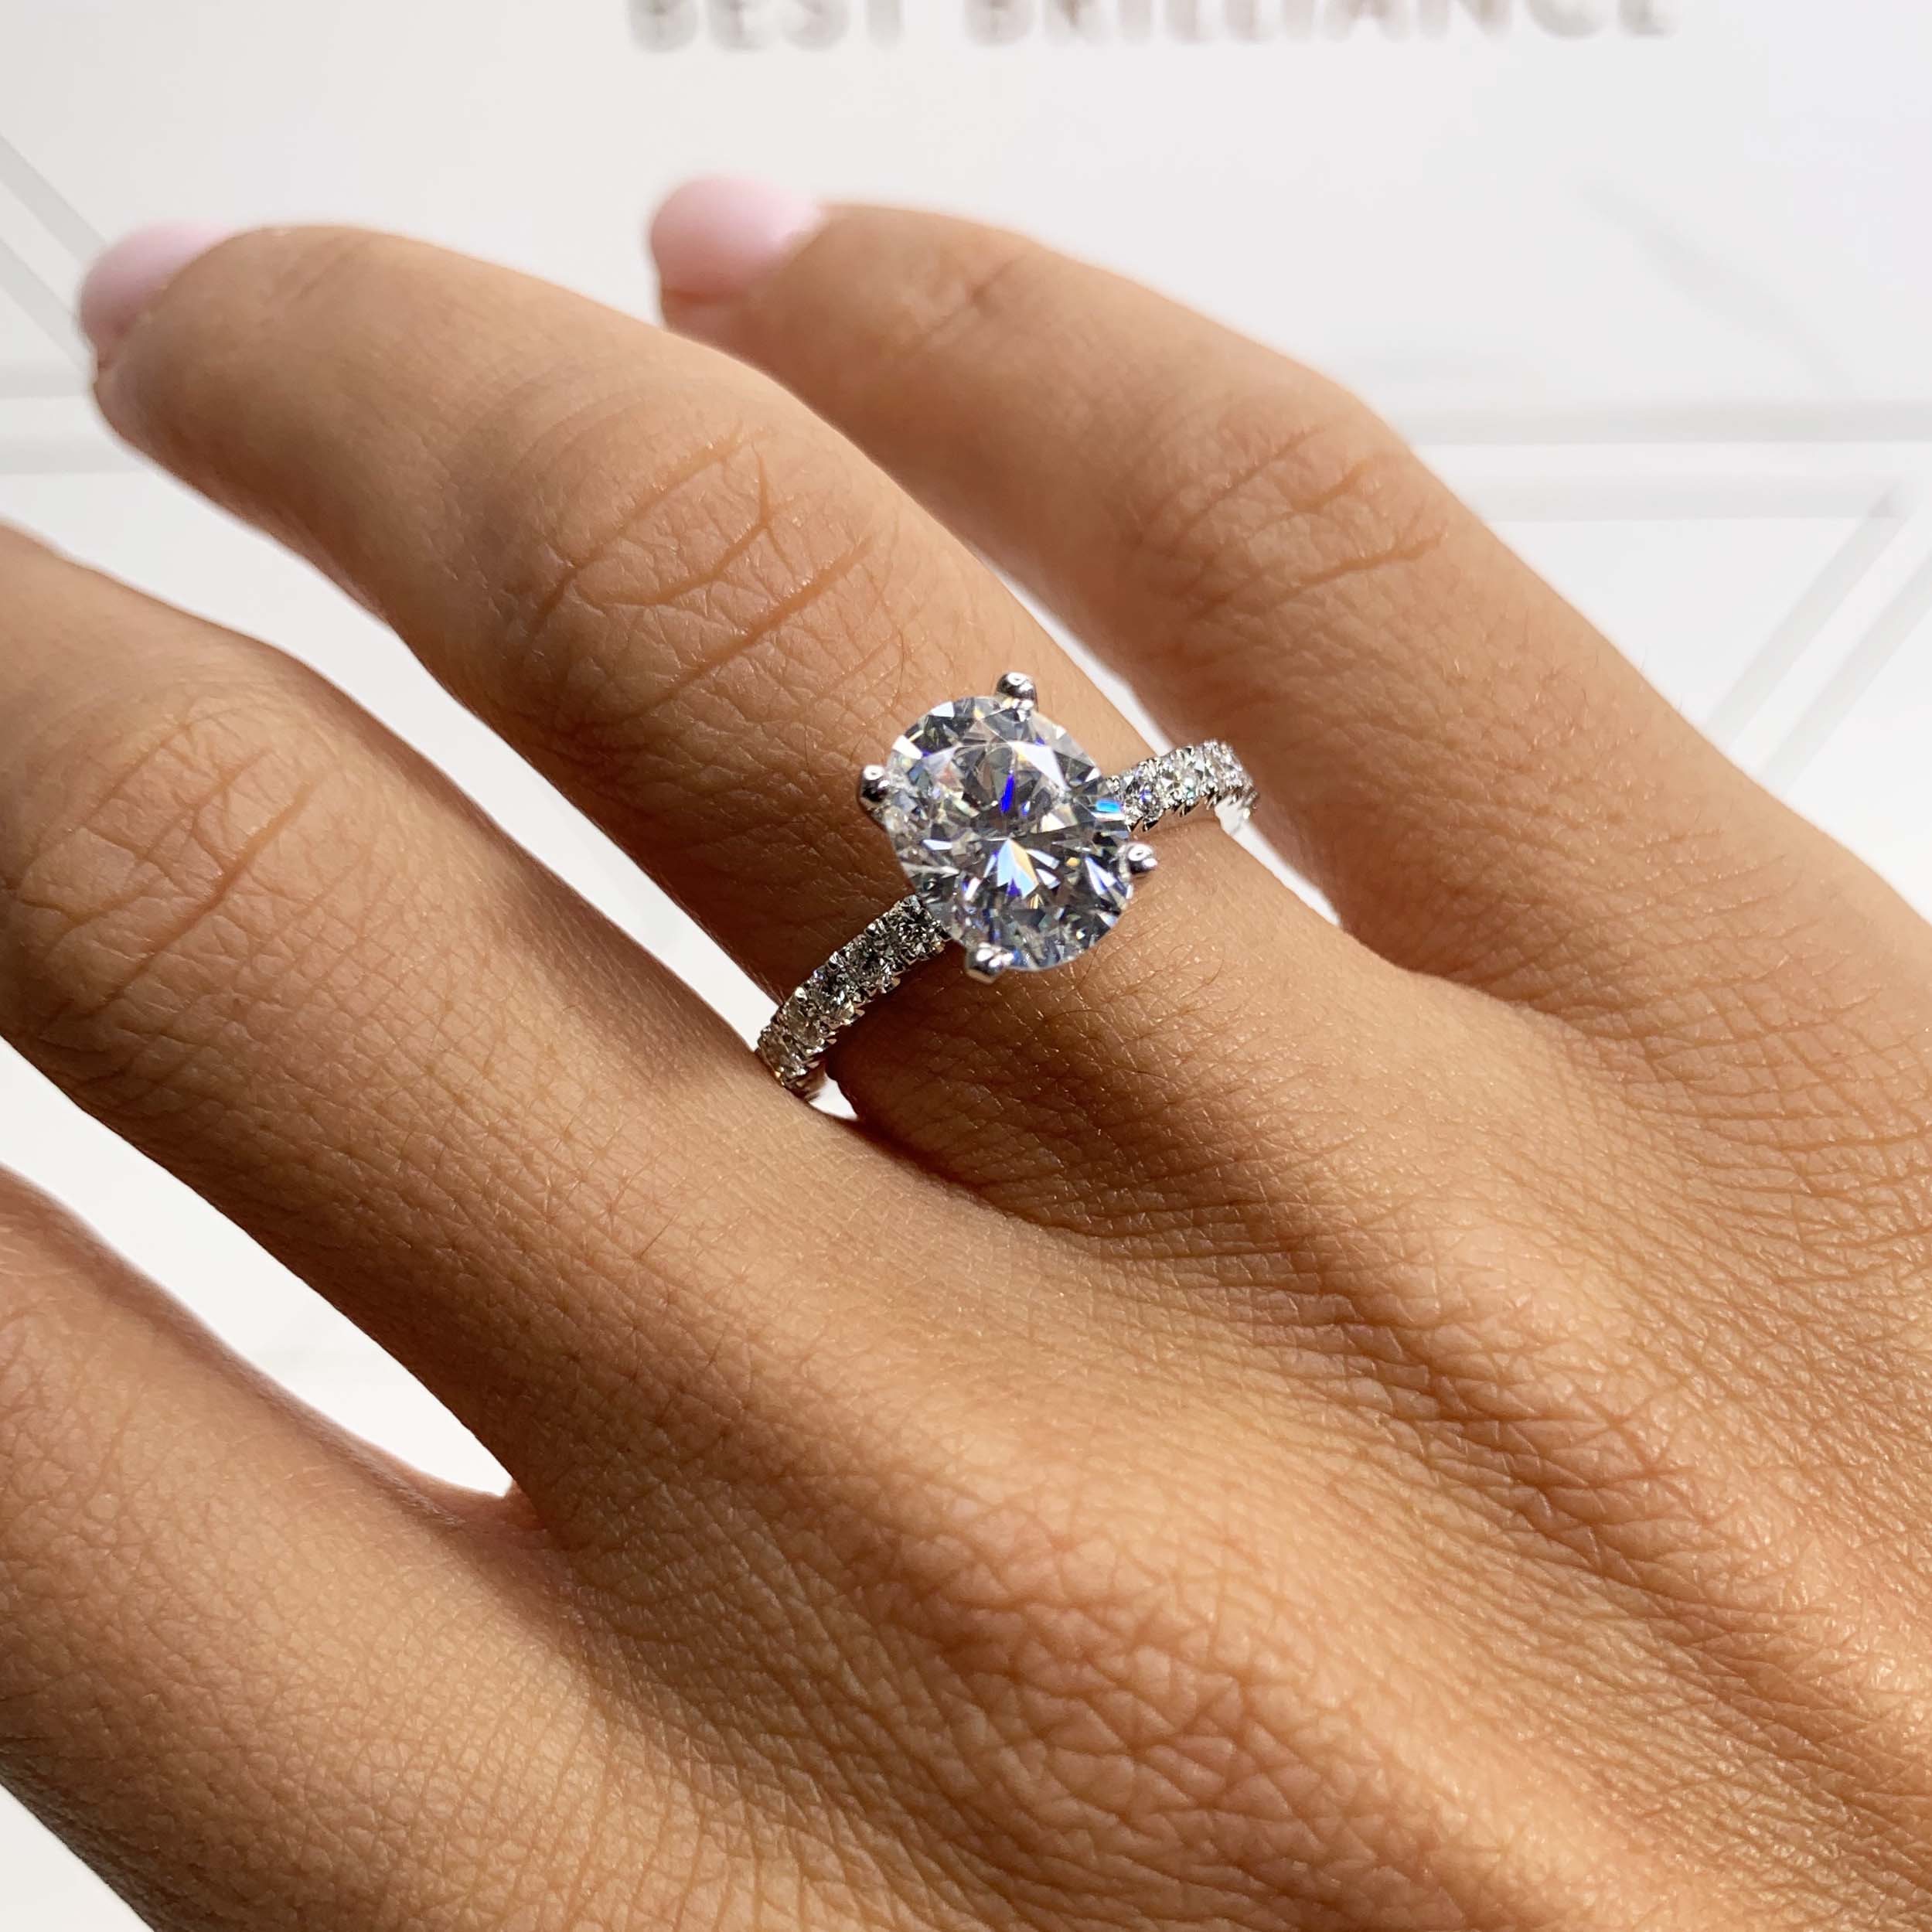 Alison Moissanite & Diamonds Ring   (2.65 Carat) -Platinum